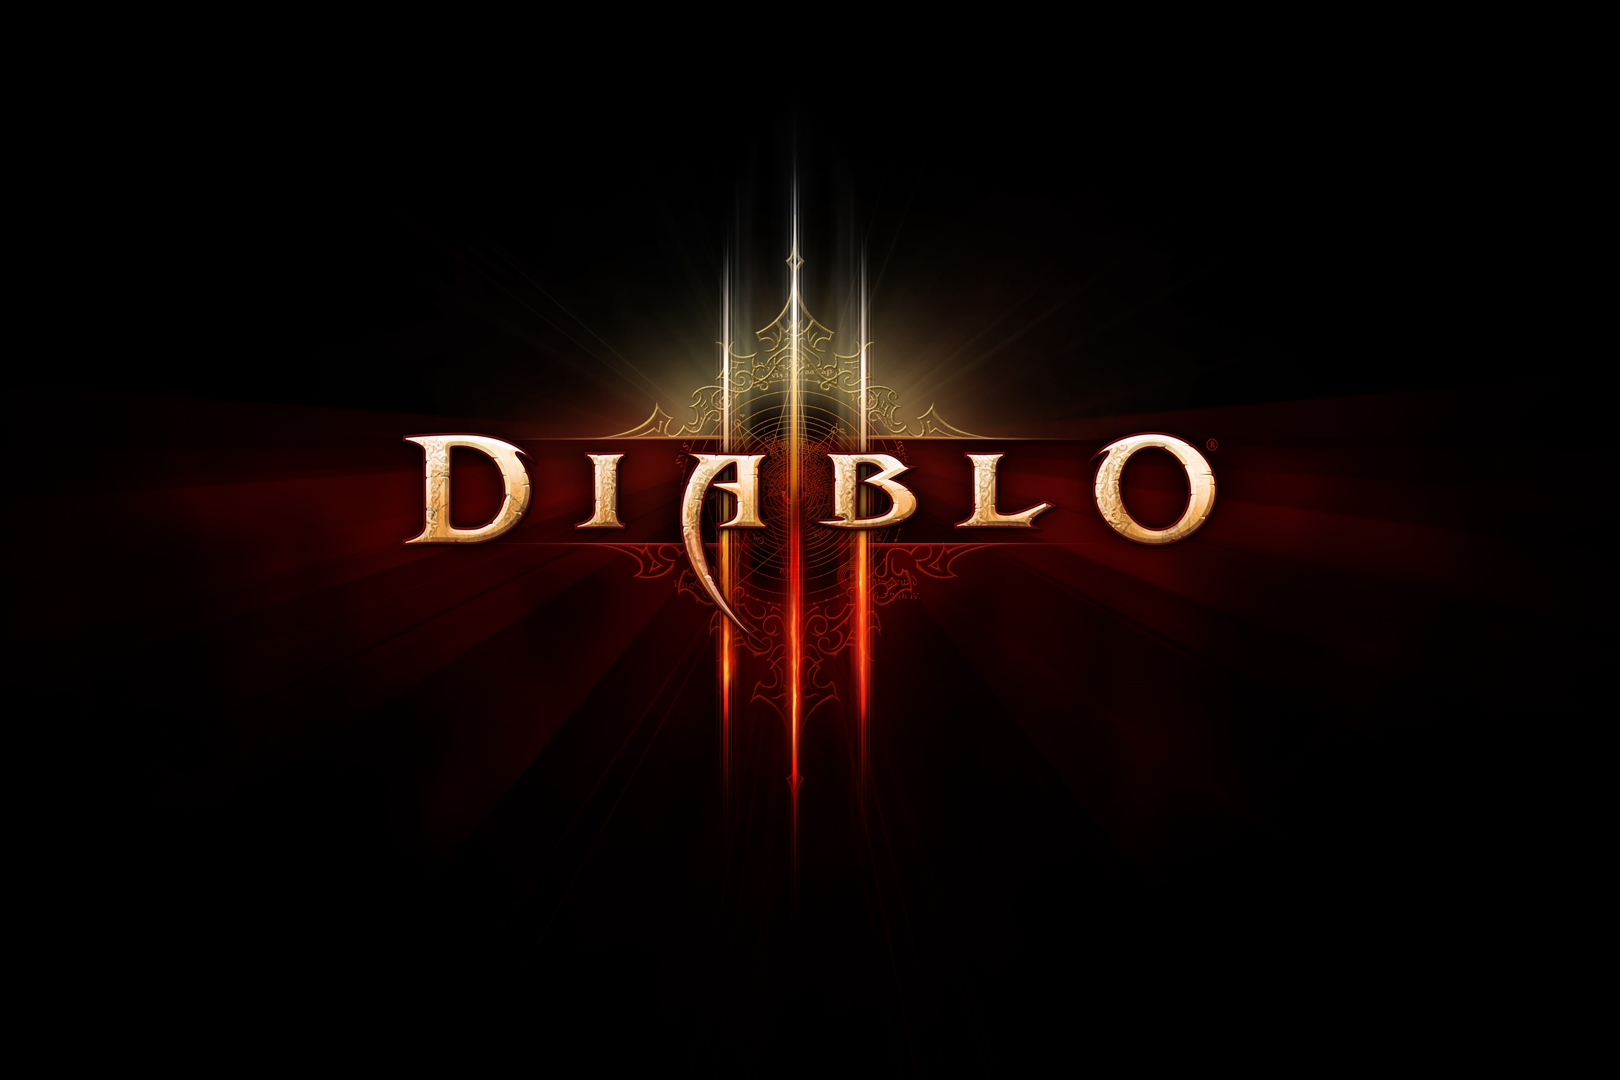 diablo 3 patch 2.6 1 release date